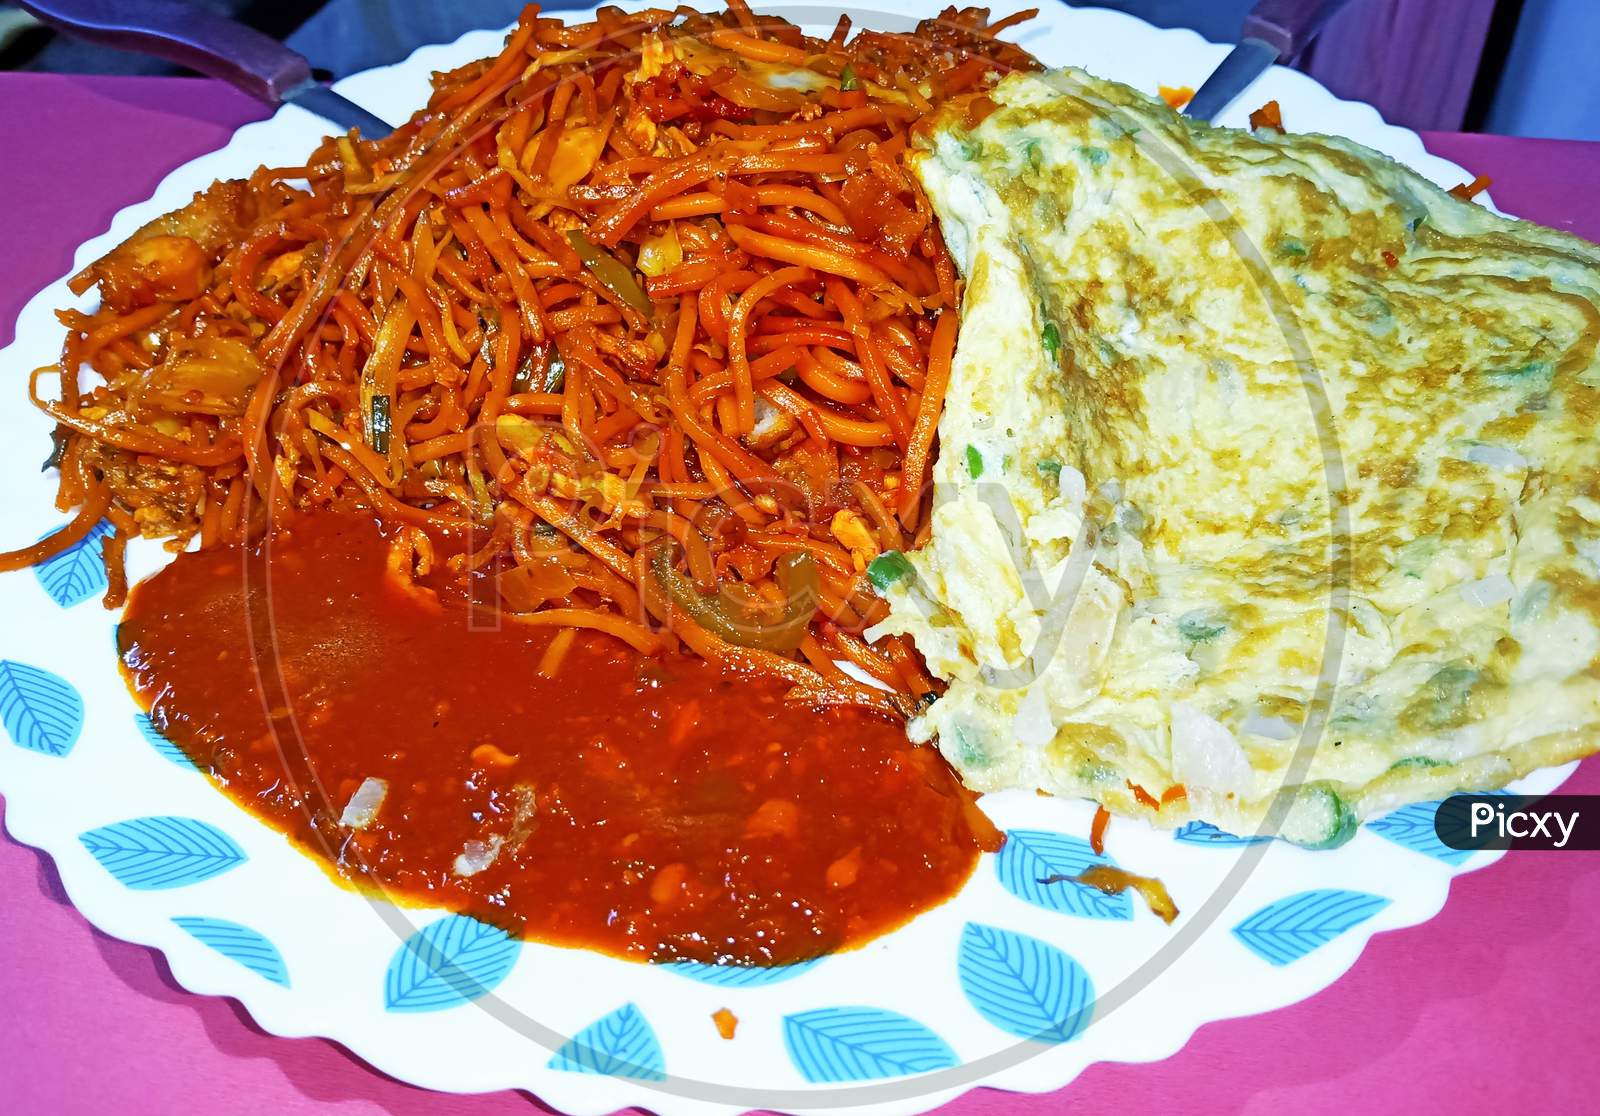 Spicy Chicken Noodles with Schezwan Sauce